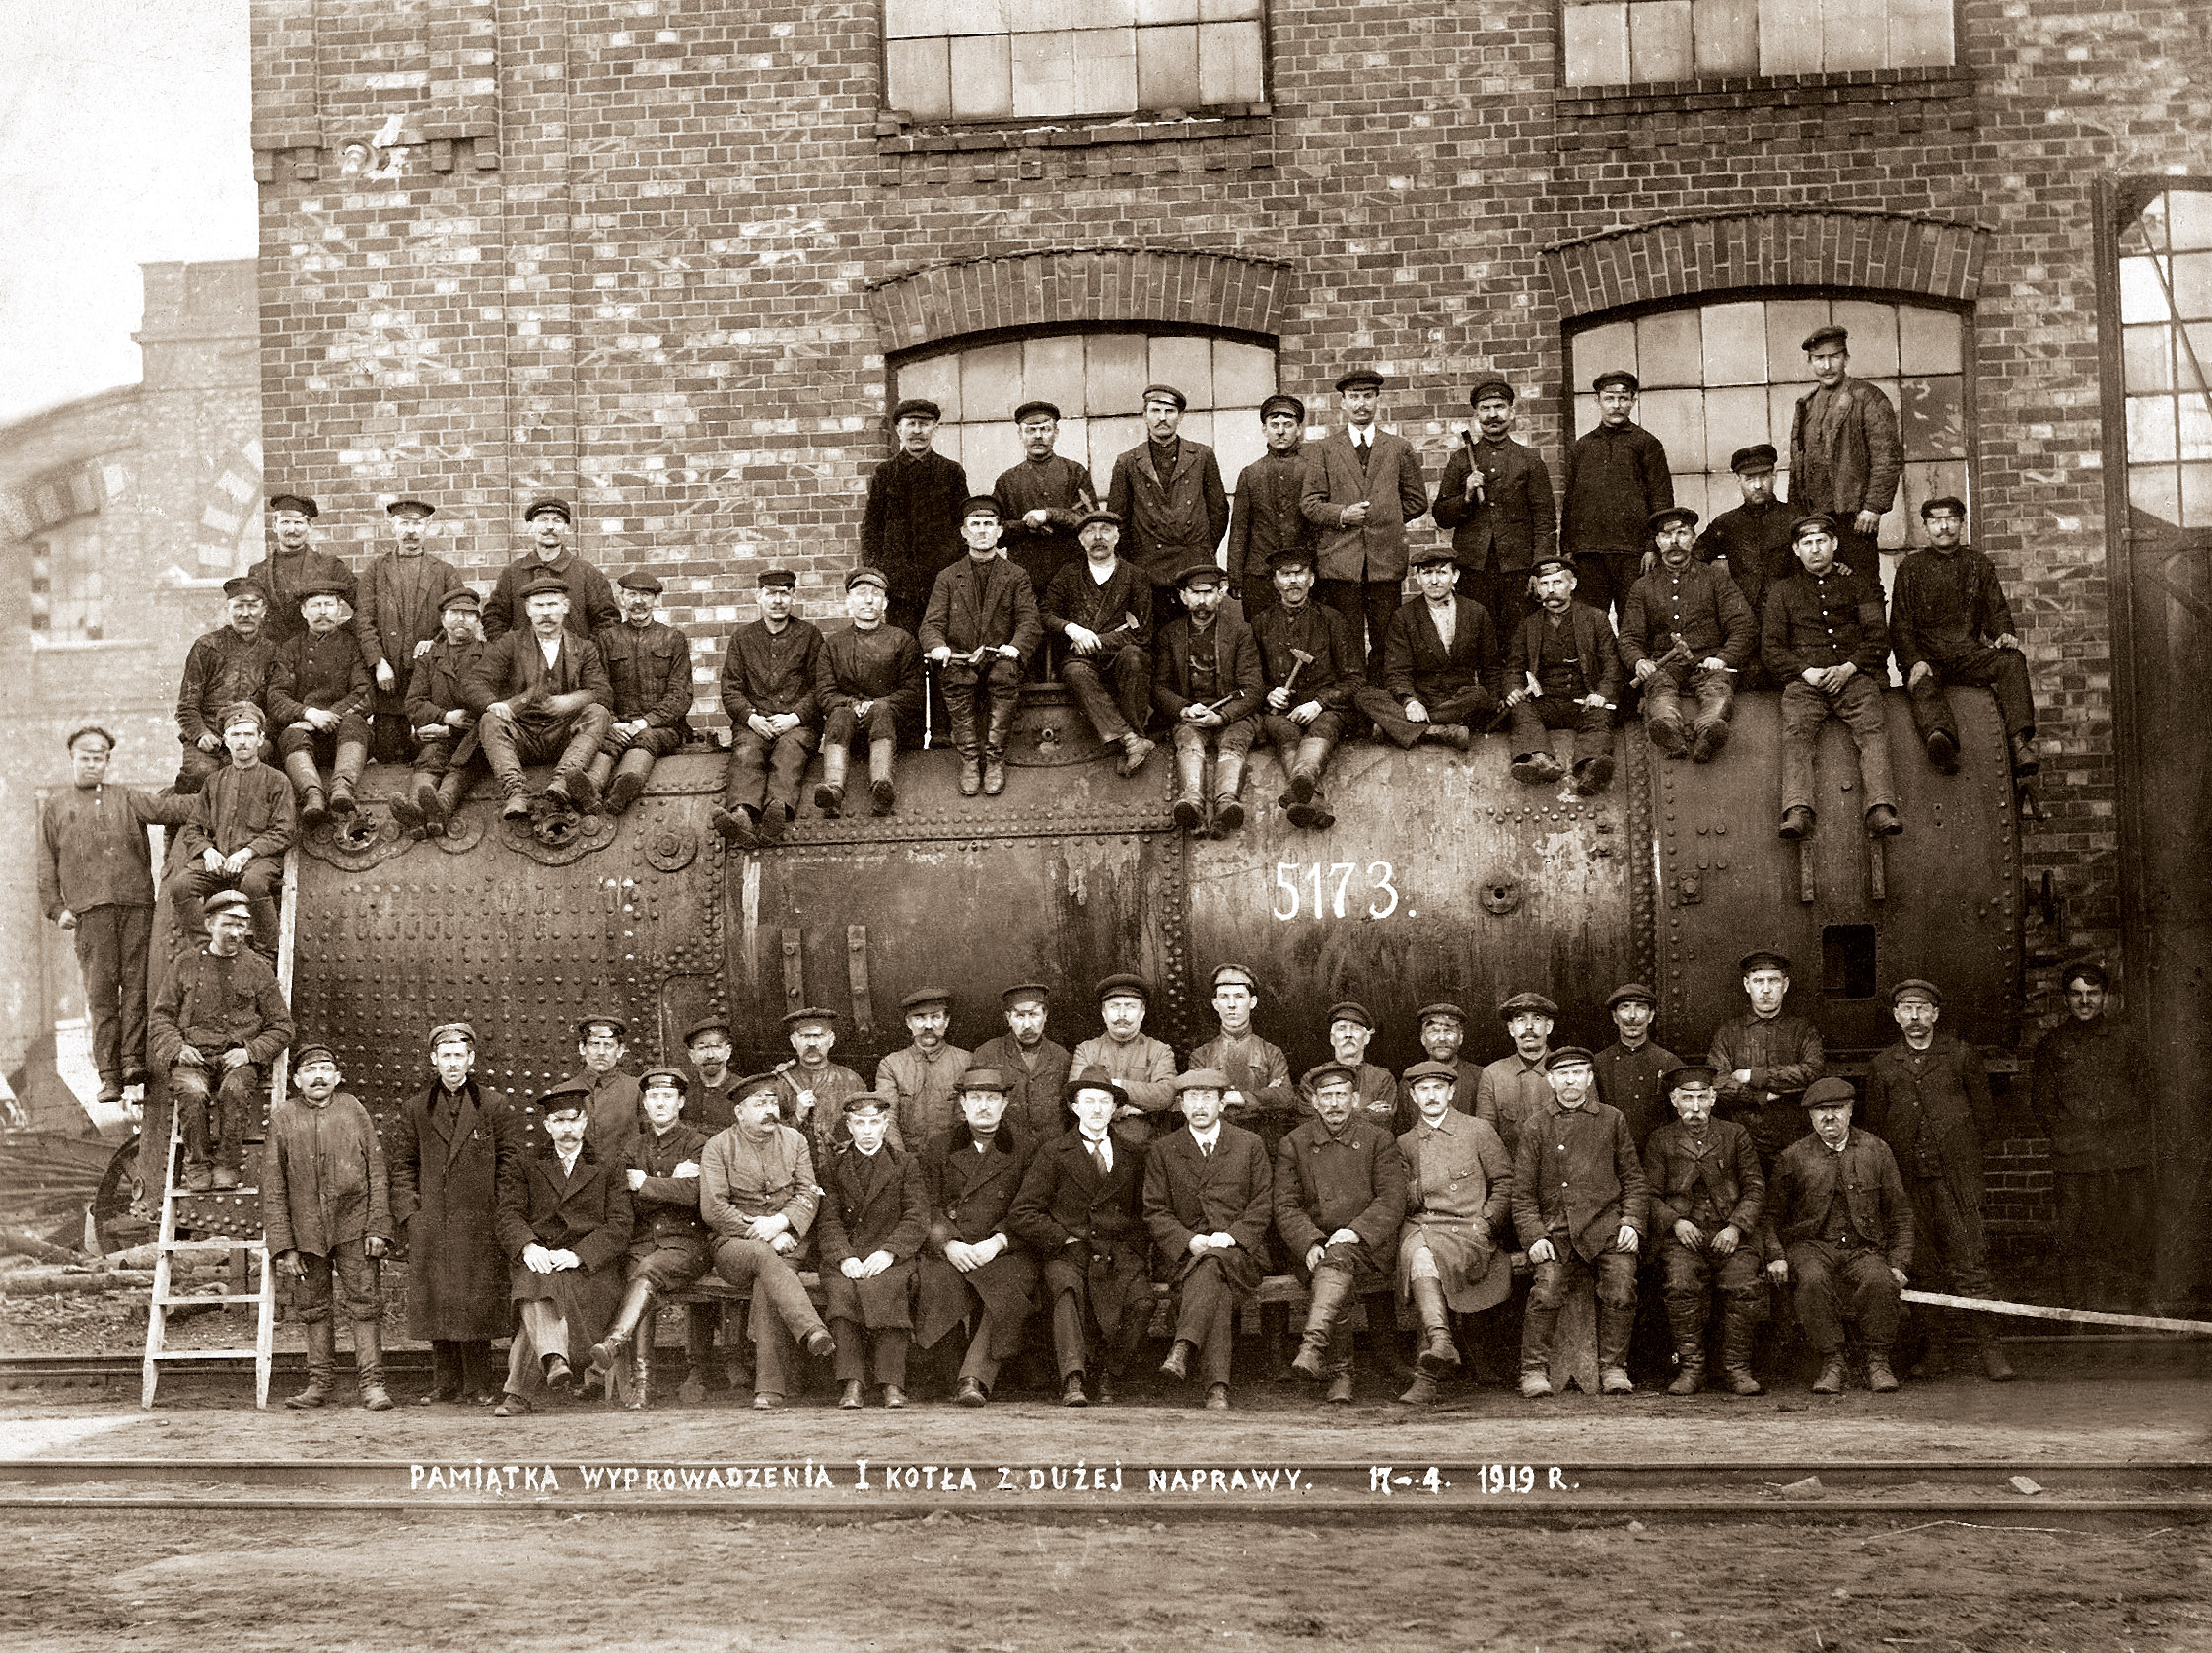 Fotografia upamiętniająca wyprowadzenie pierwszego kotła parowozu z naprawy - 1919 r. / A photograph commemorating the delivery of the first steam boiler after repair - 1919